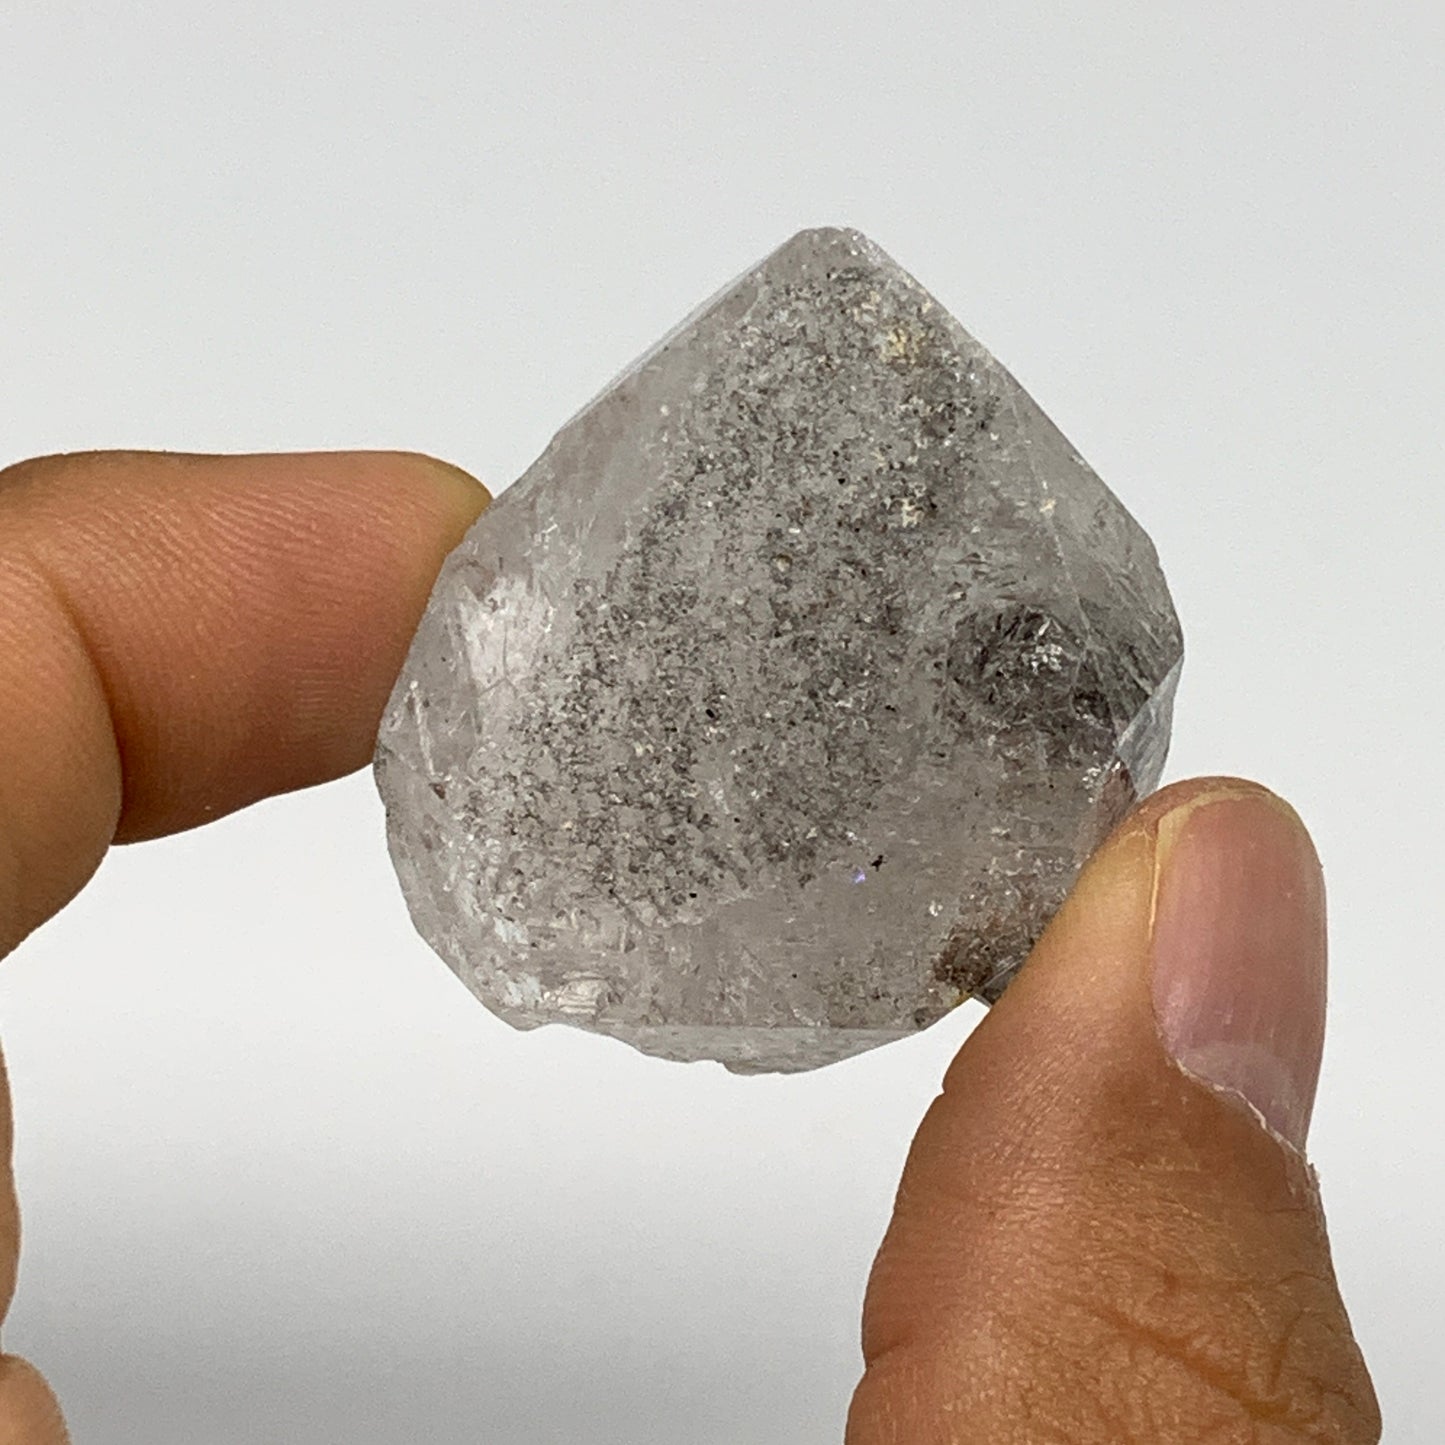 26.8g, 1.5"x1.2"x0.7", Natural Window Quartz Crystal Terminated @Pakistan,B27522